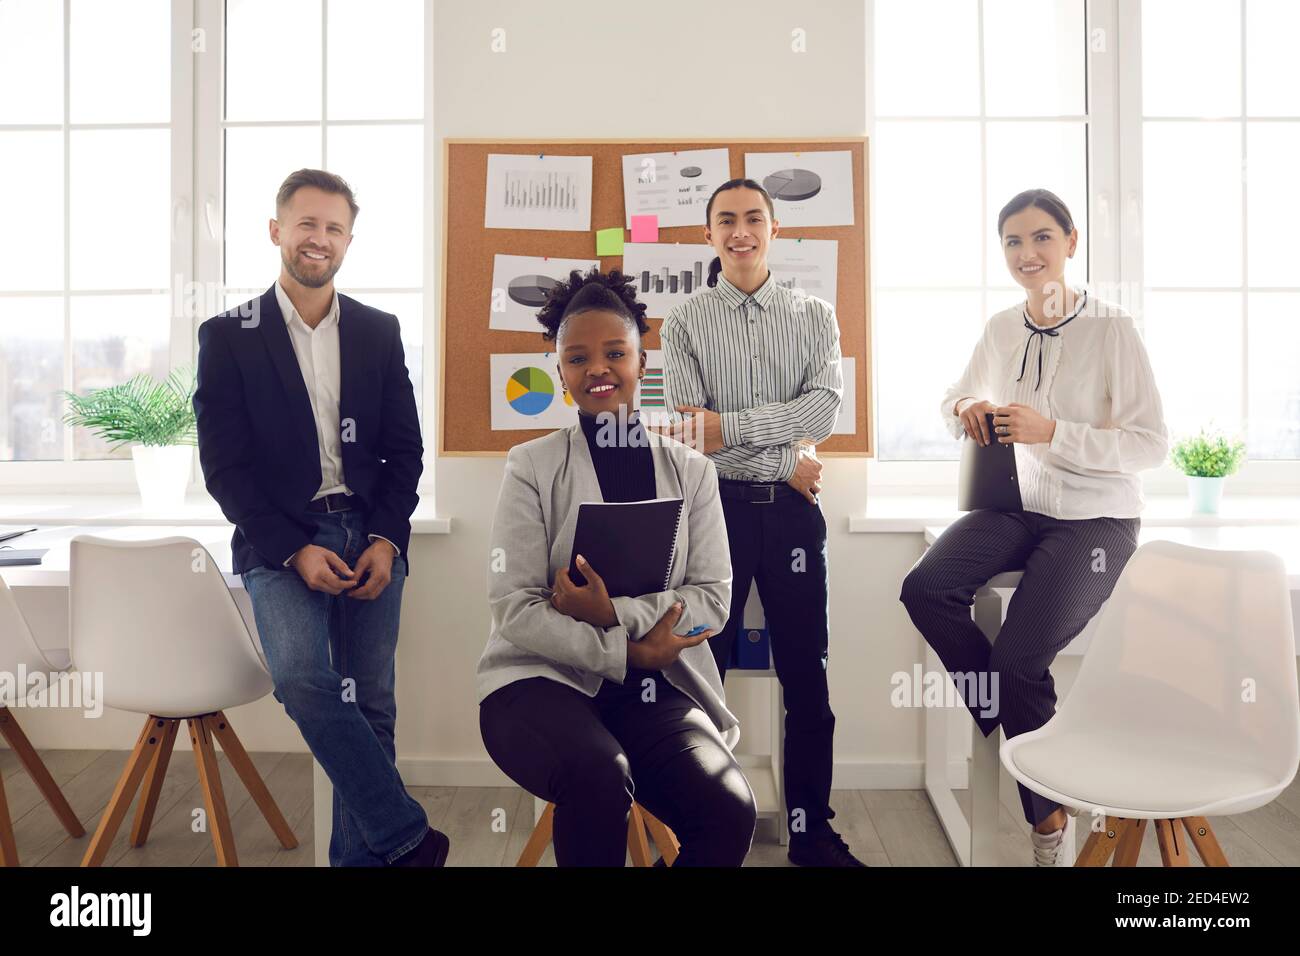 Porträt von Büroangestellten mit mehreren Rassen, die lächelnd die Kamera im modernen Business Center betrachten. Stockfoto